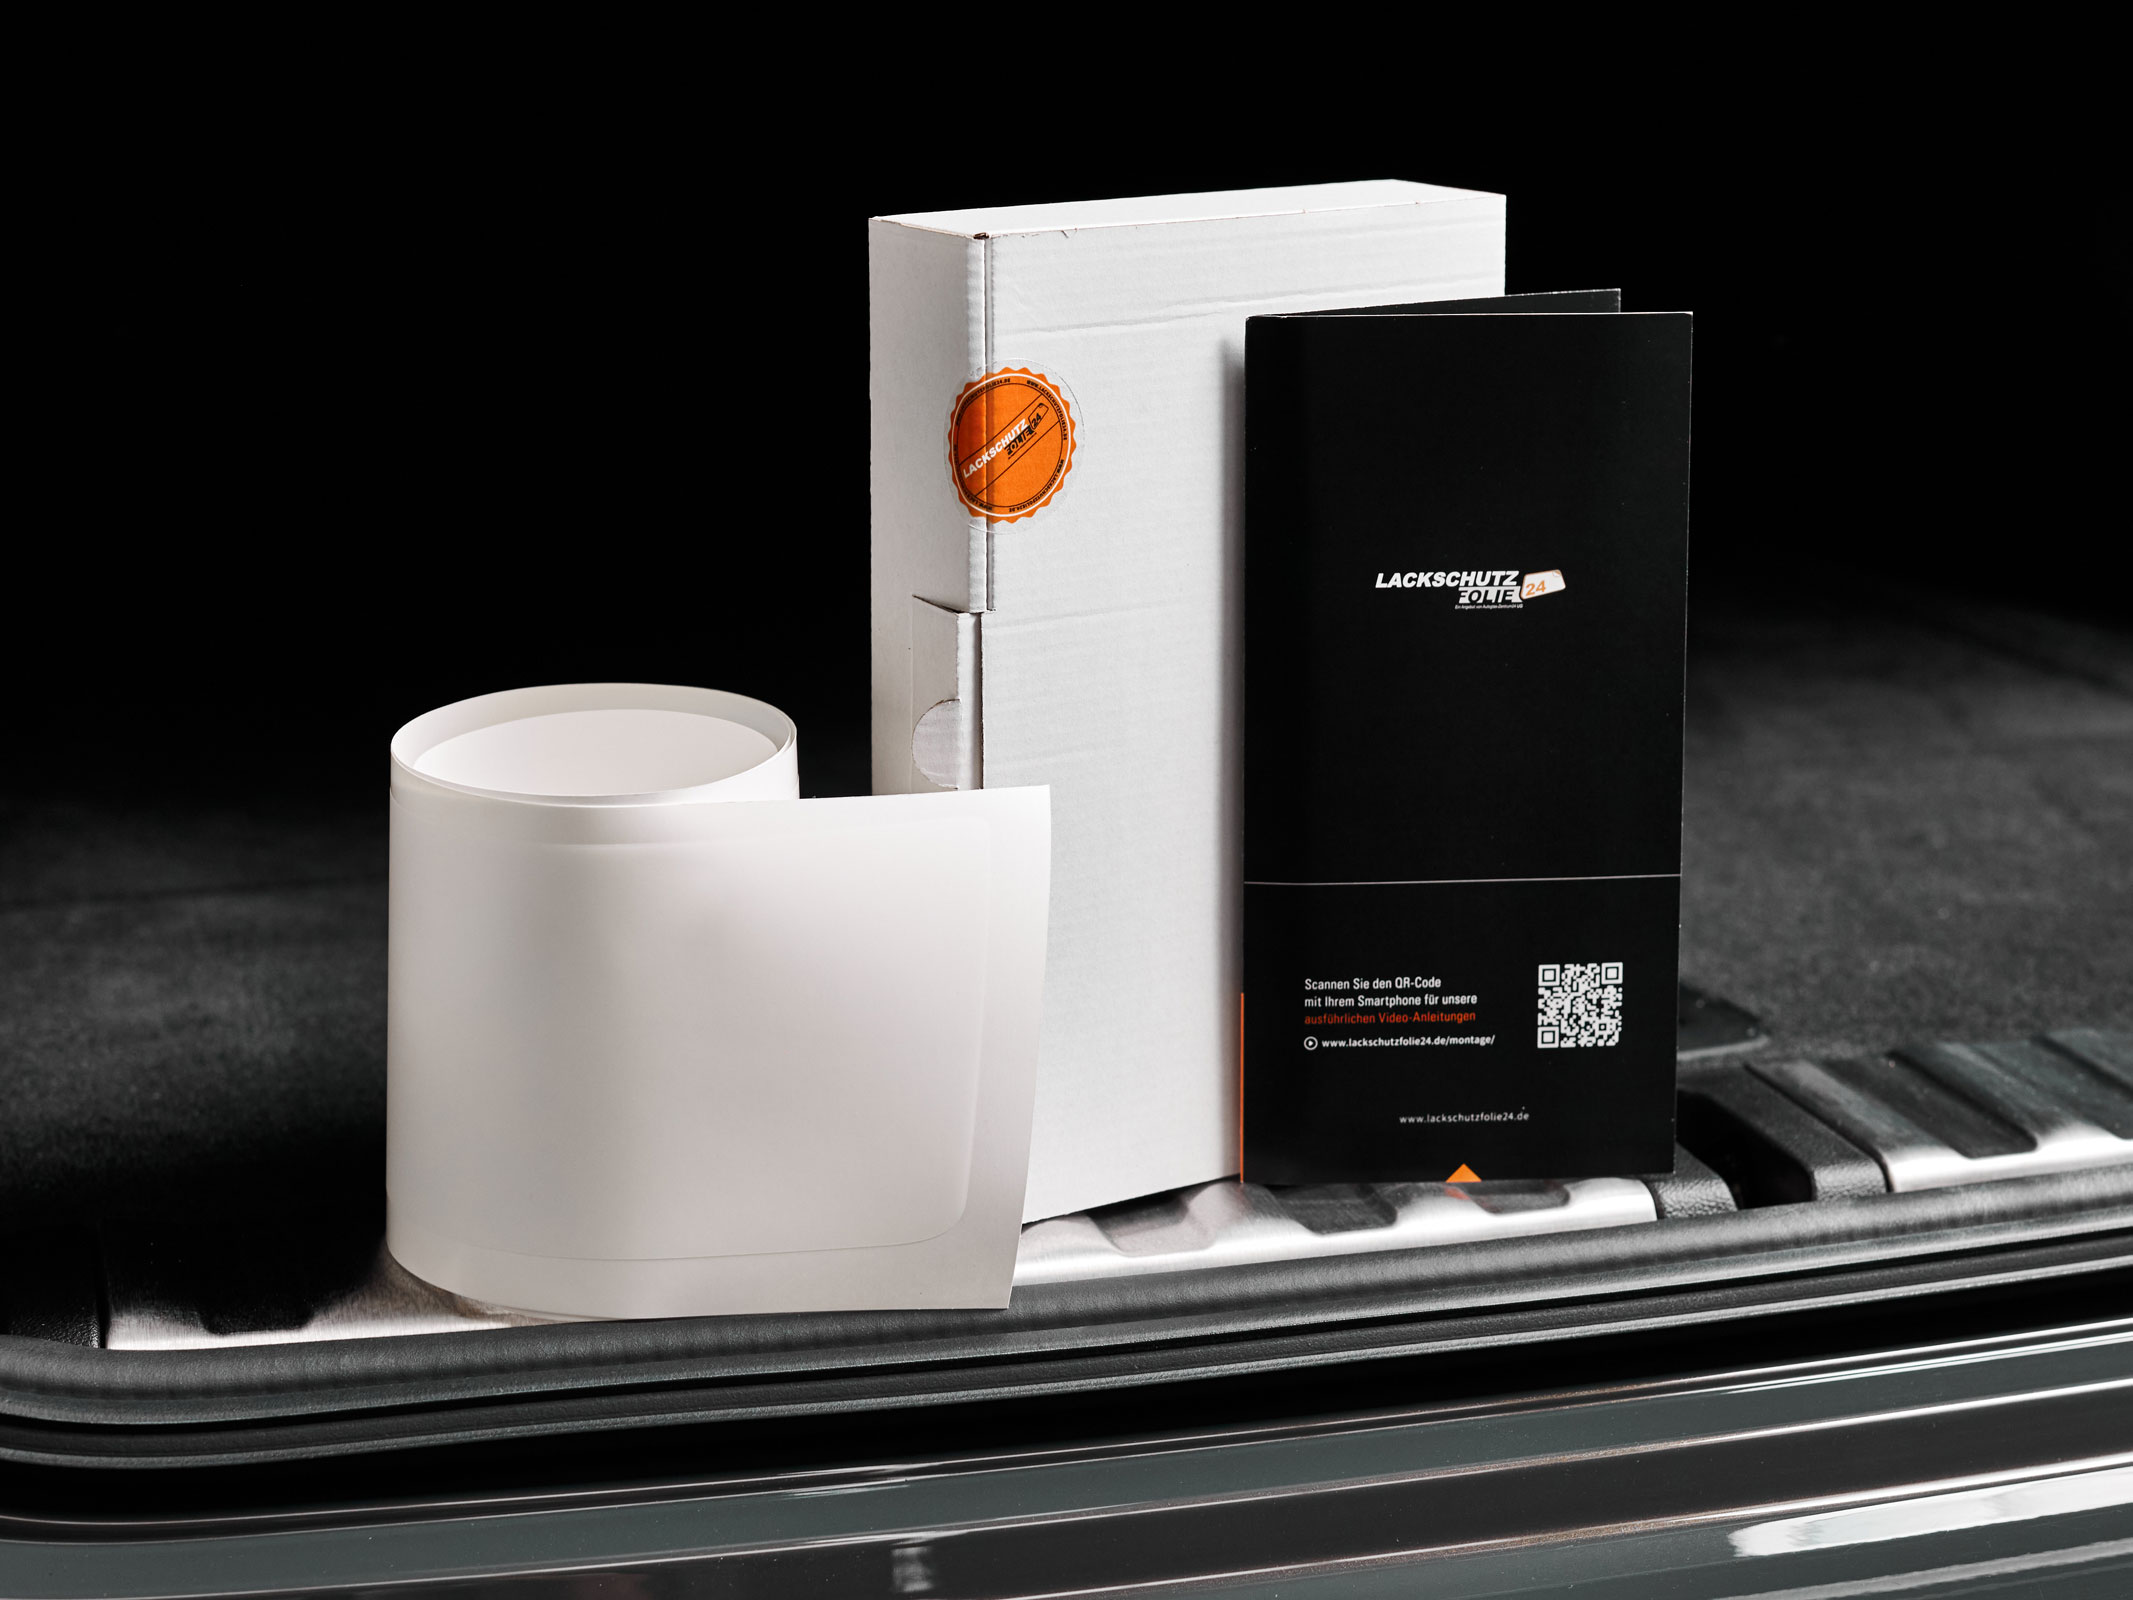 Ladekantenschutzfolie - Transparent Glatt MATT 110 µm stark  für Peugeot 3008 (I) BJ 2010 - 05/2016